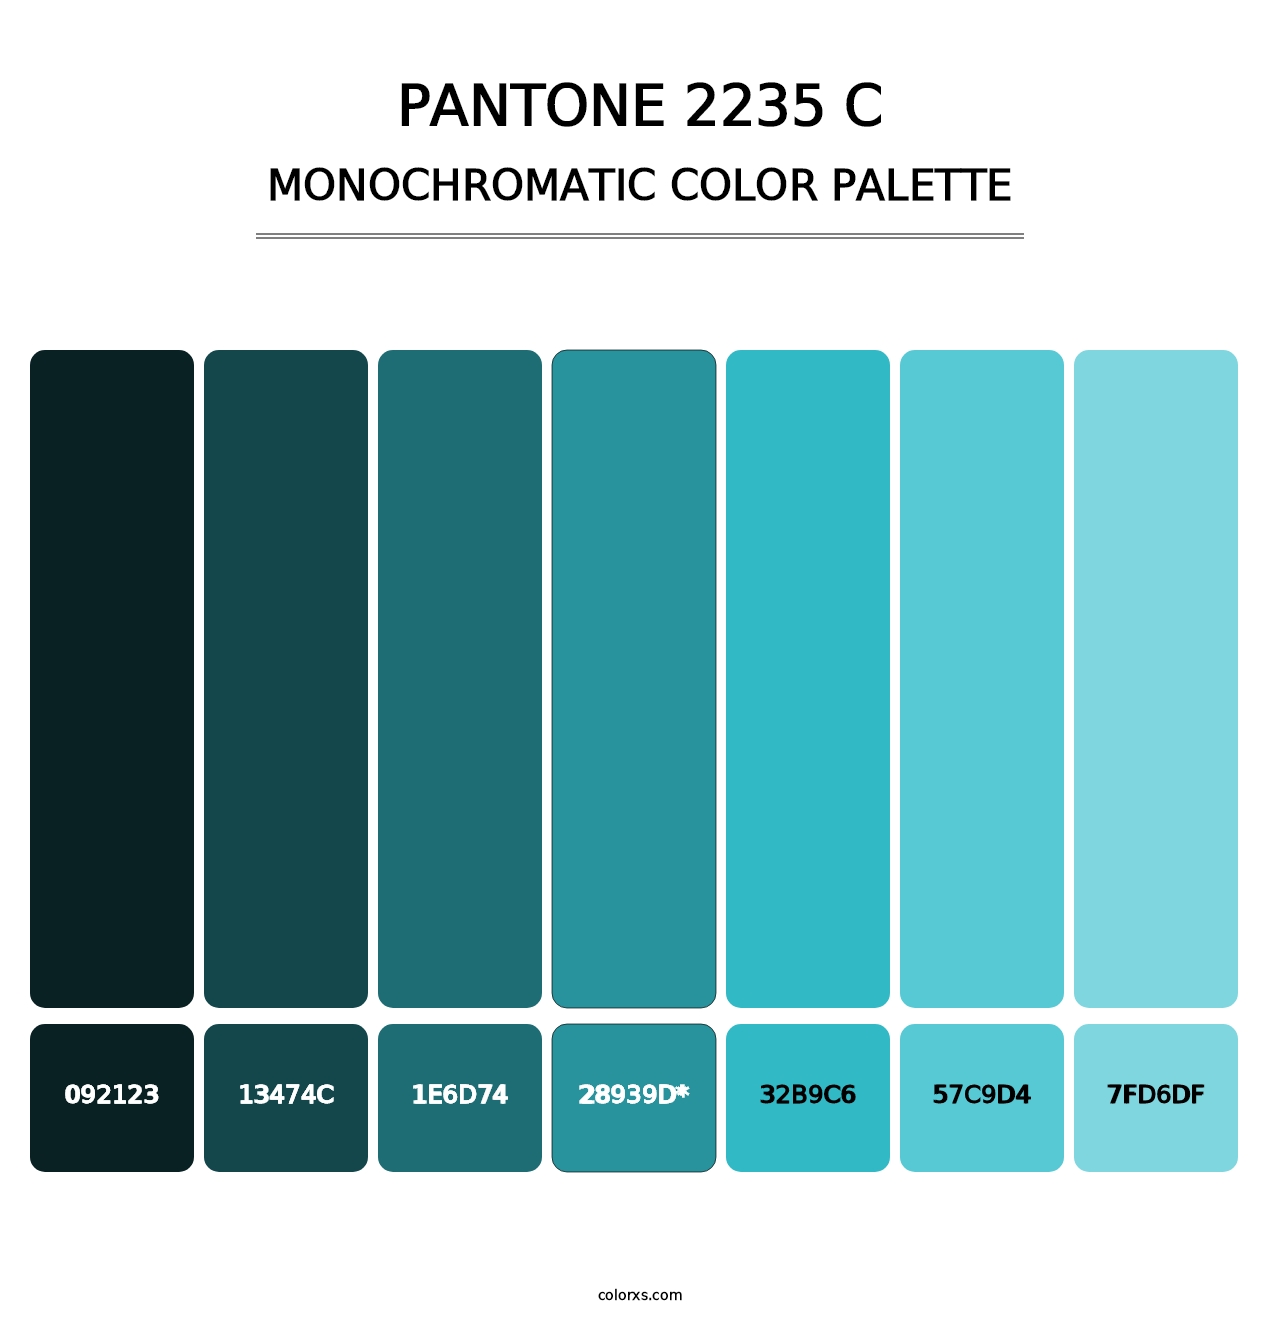 PANTONE 2235 C - Monochromatic Color Palette